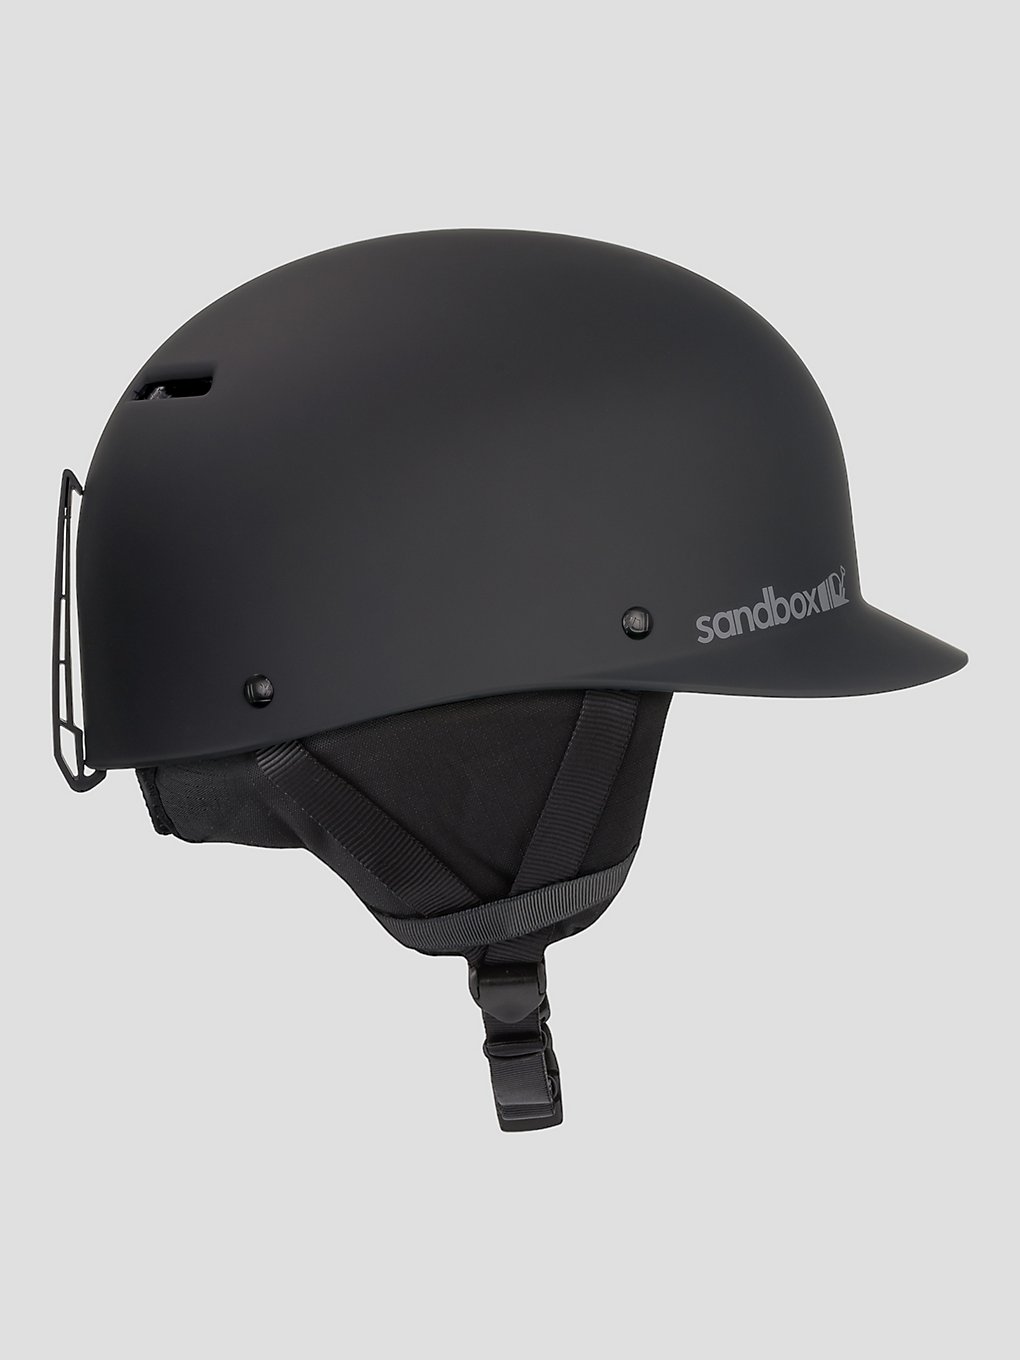 Sandbox Classic 2.0 Snow Helm black (matte) kaufen